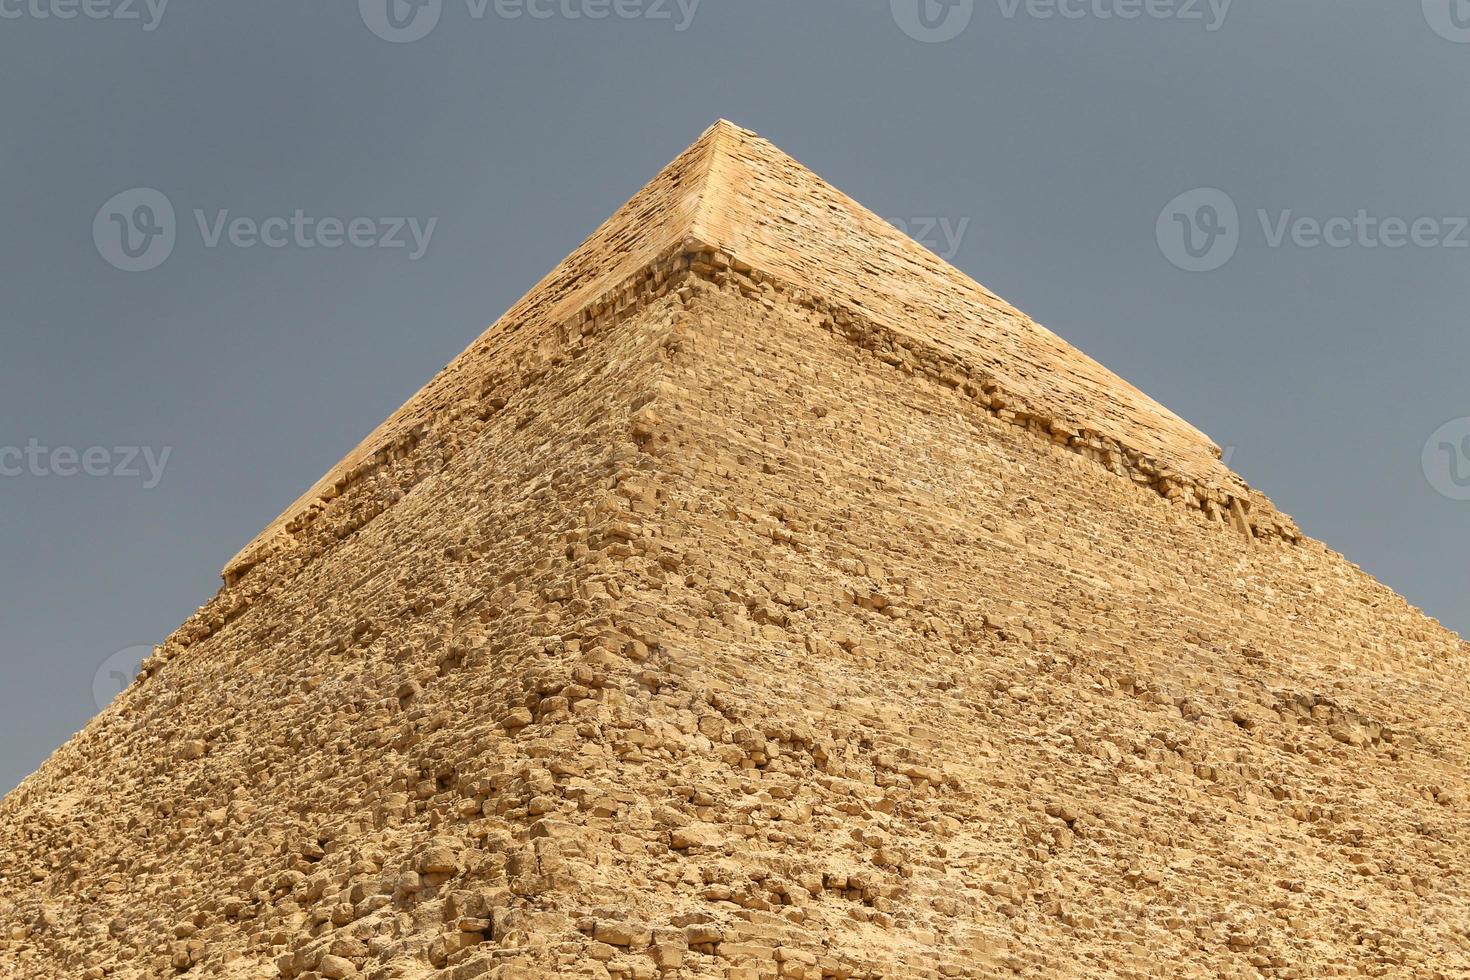 pyramide de khafre dans le complexe pyramidal de gizeh, le caire, egypte photo